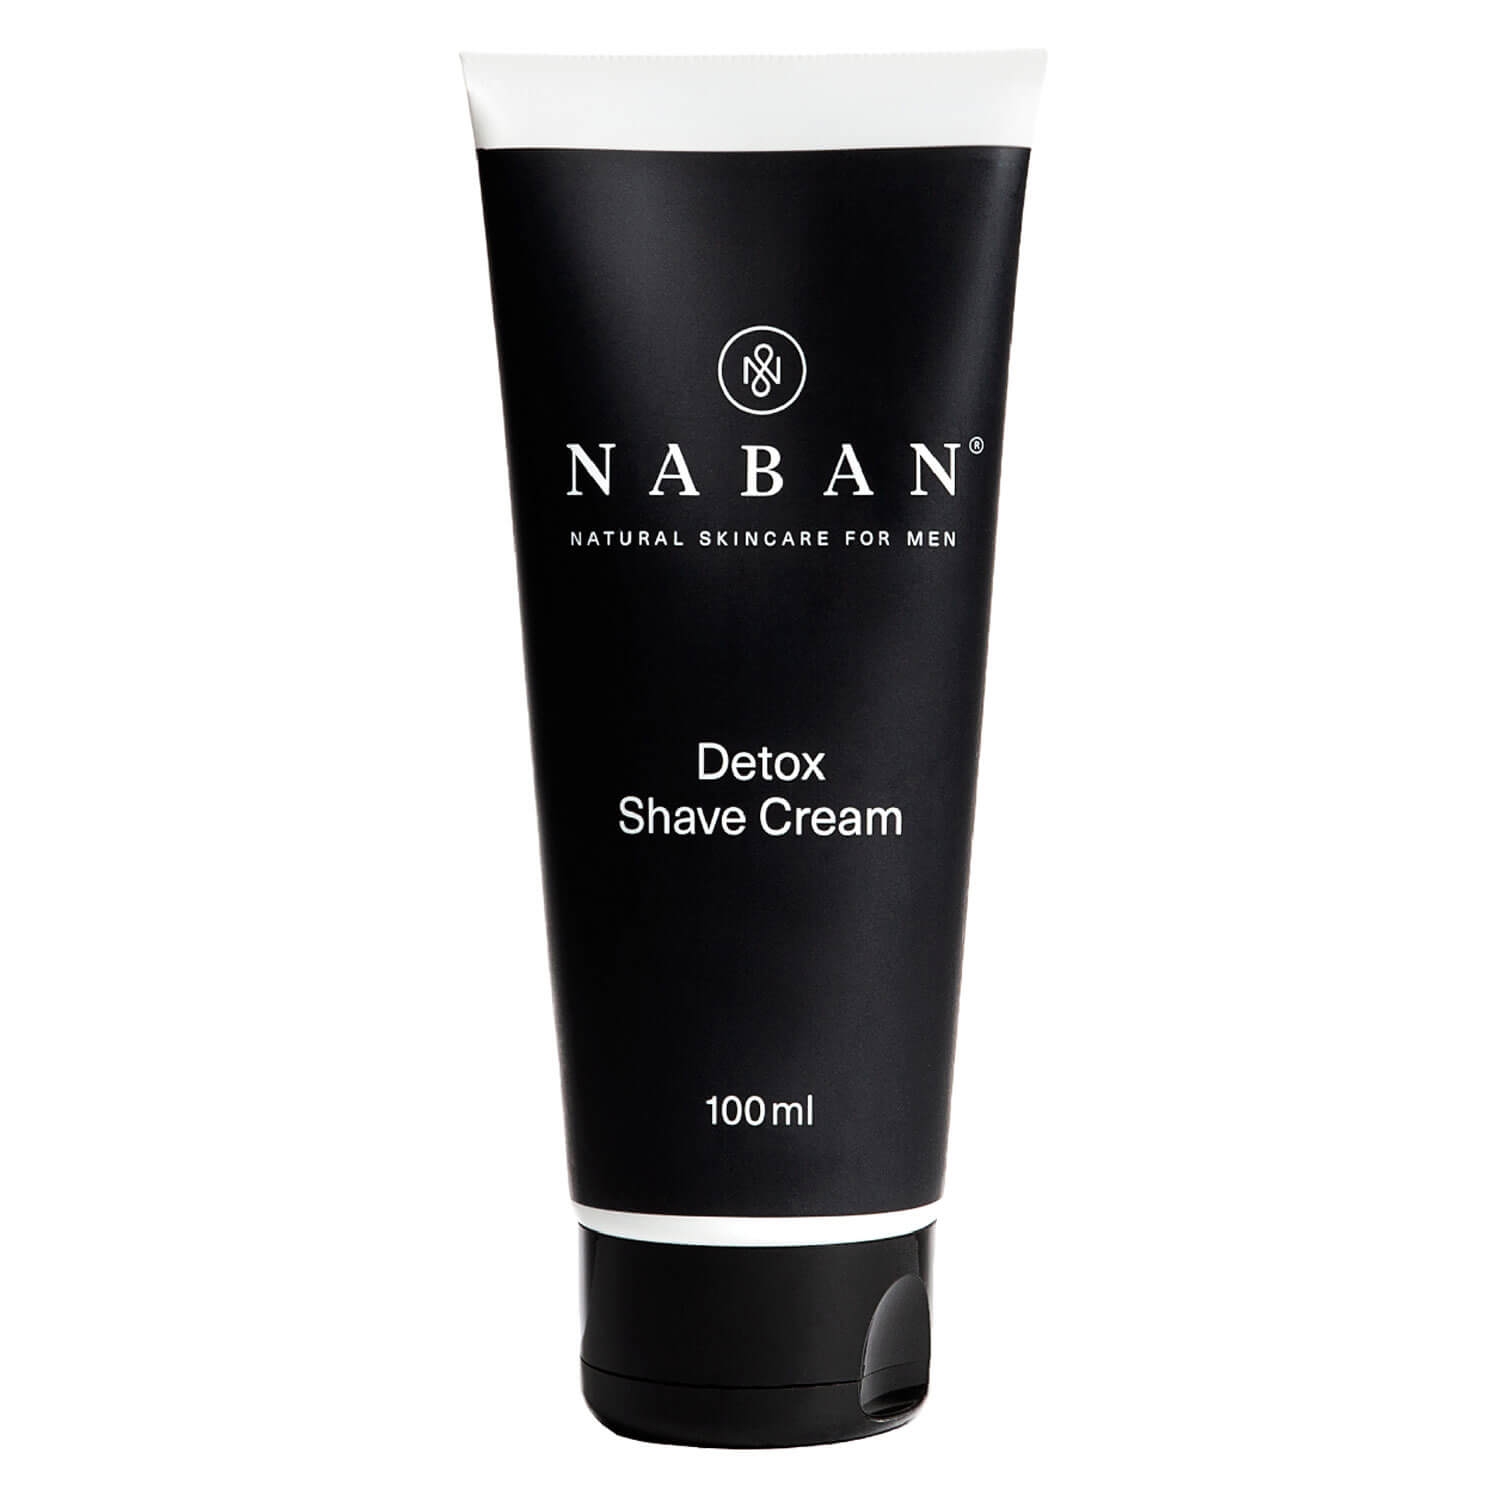 Produktbild von NABAN - Detox Shave Cream